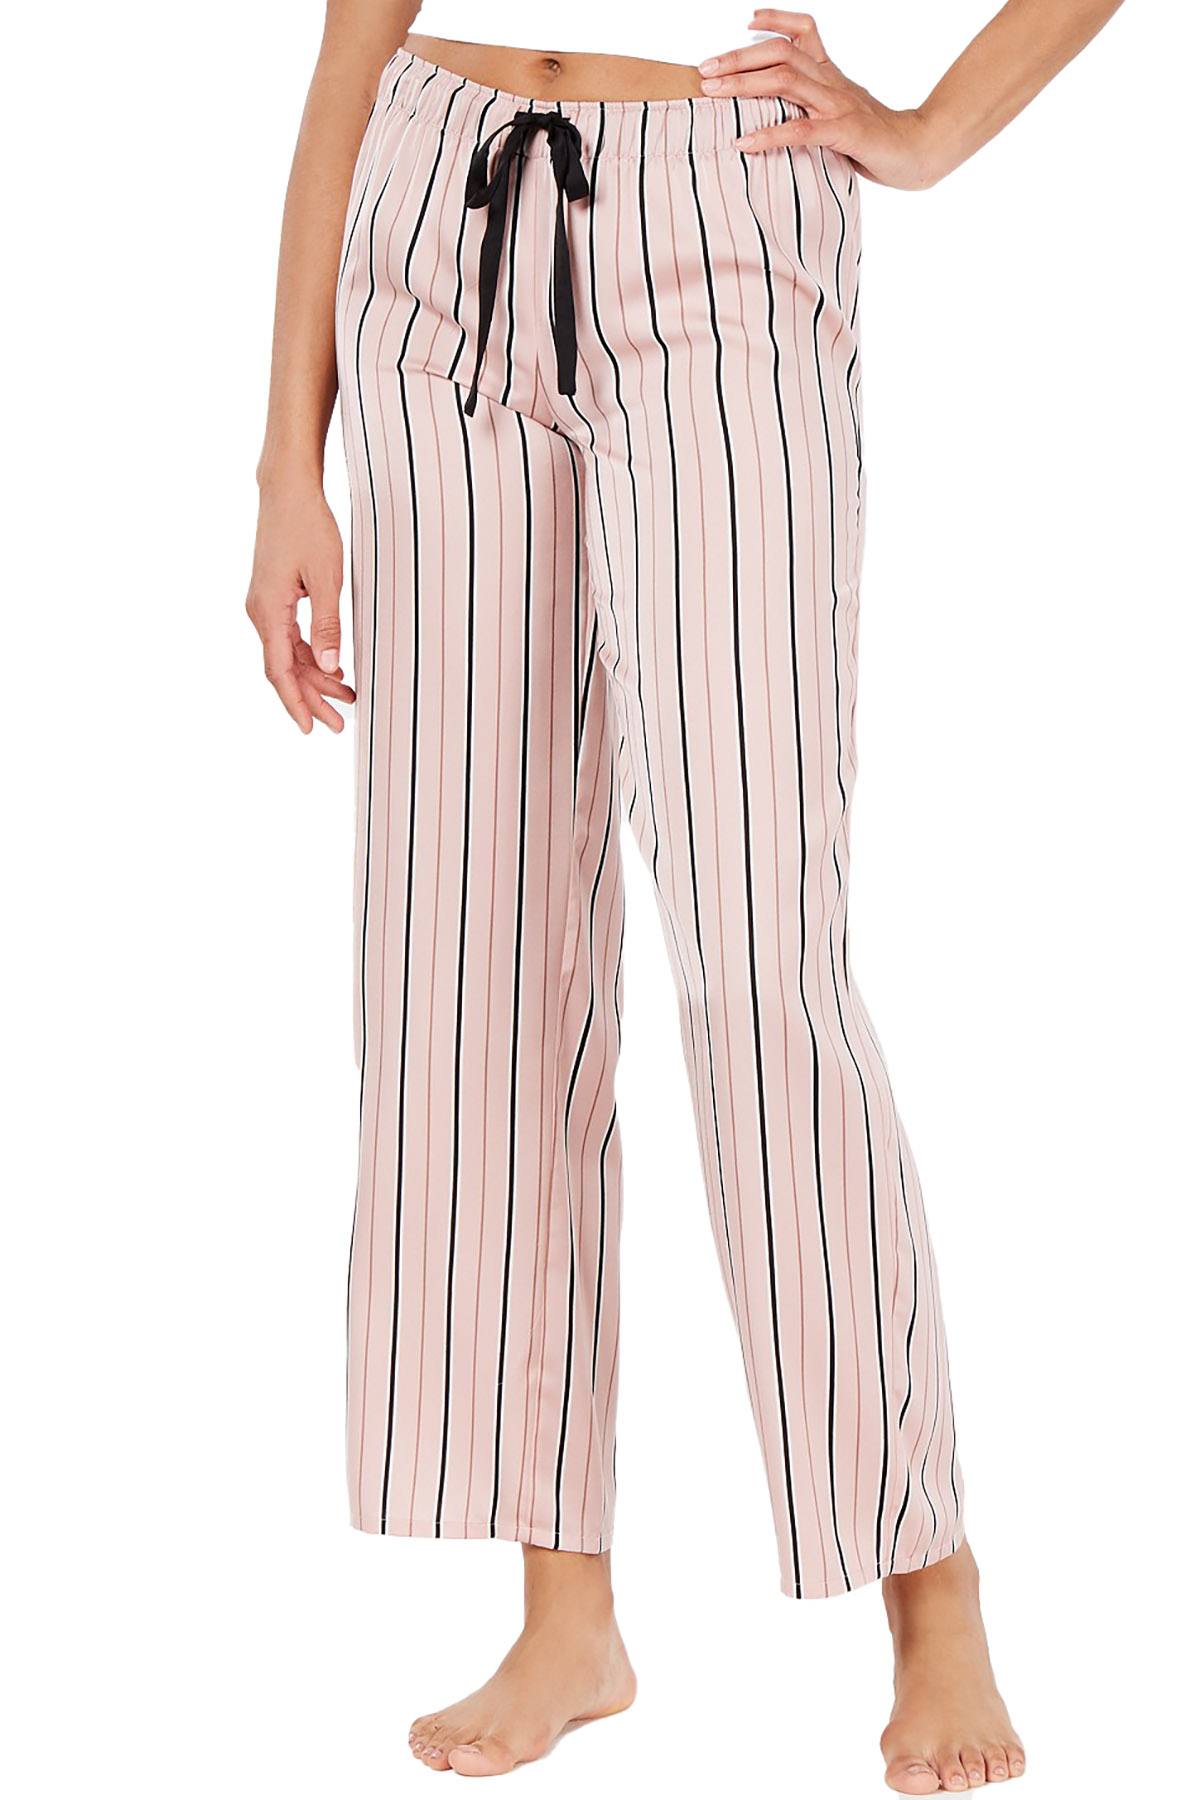 INC International Concepts Printed Pajama Pant in Blushing Stripe